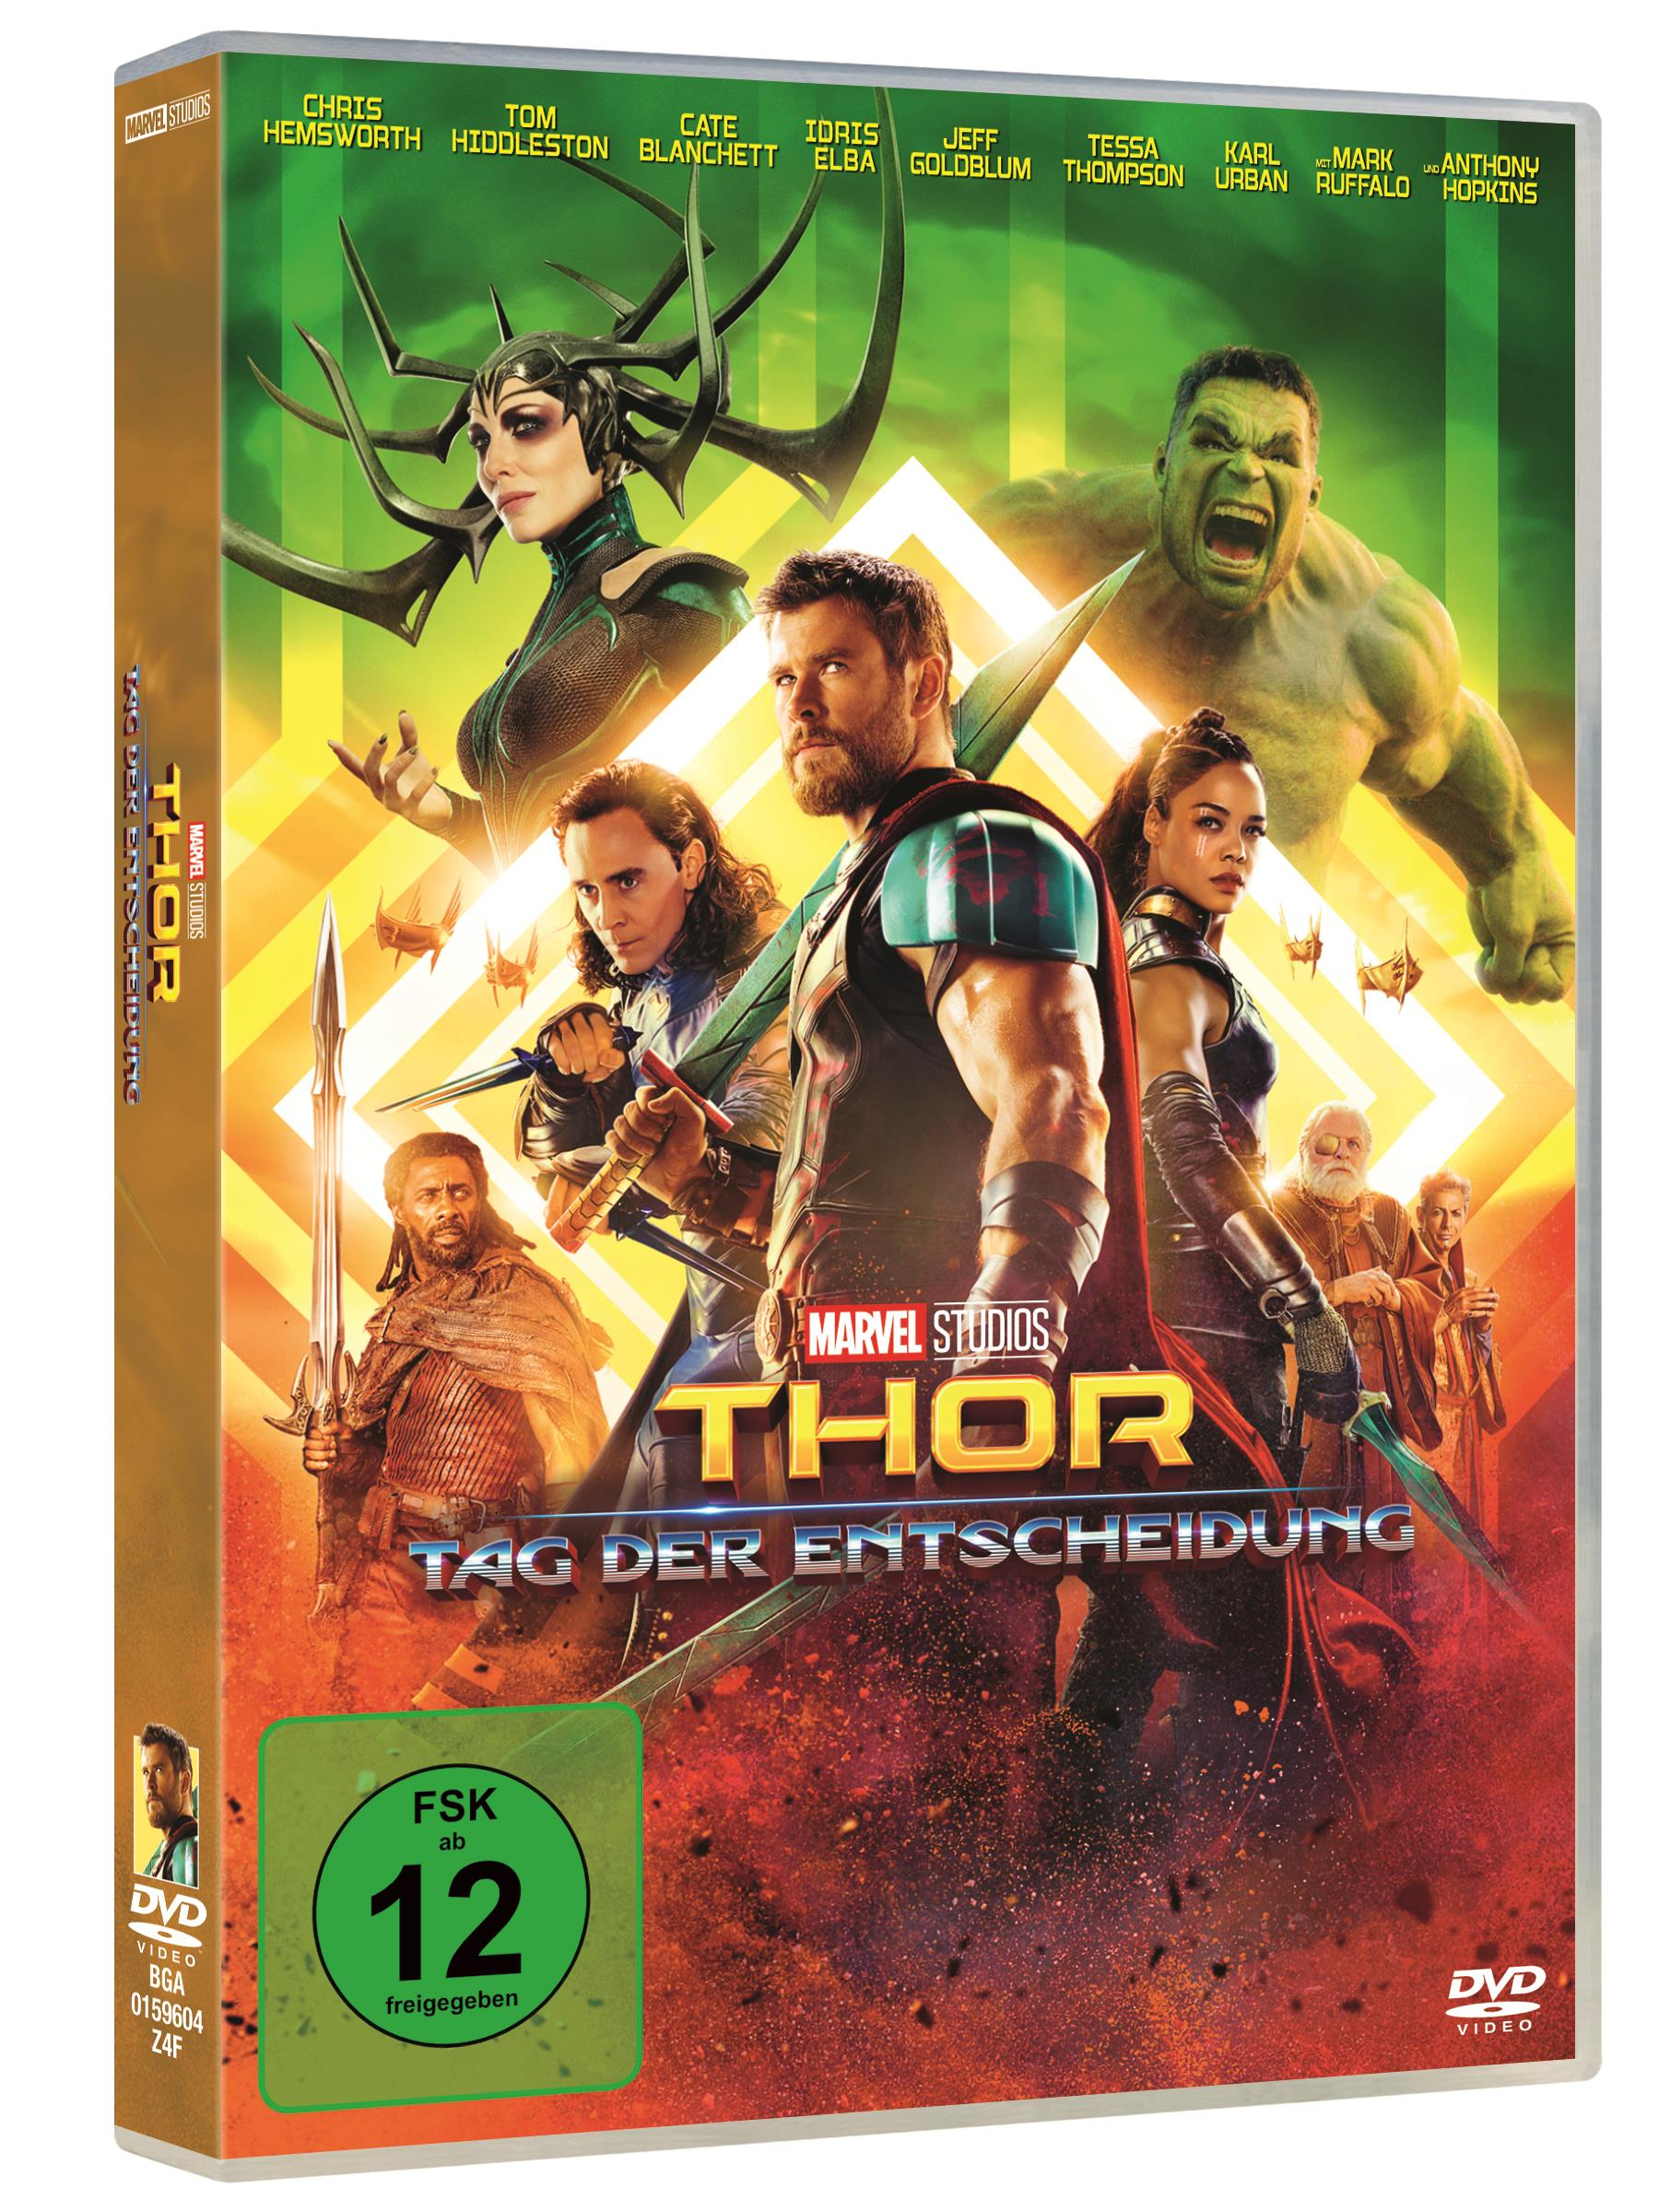 Entscheidung DVD der Thor: Tag